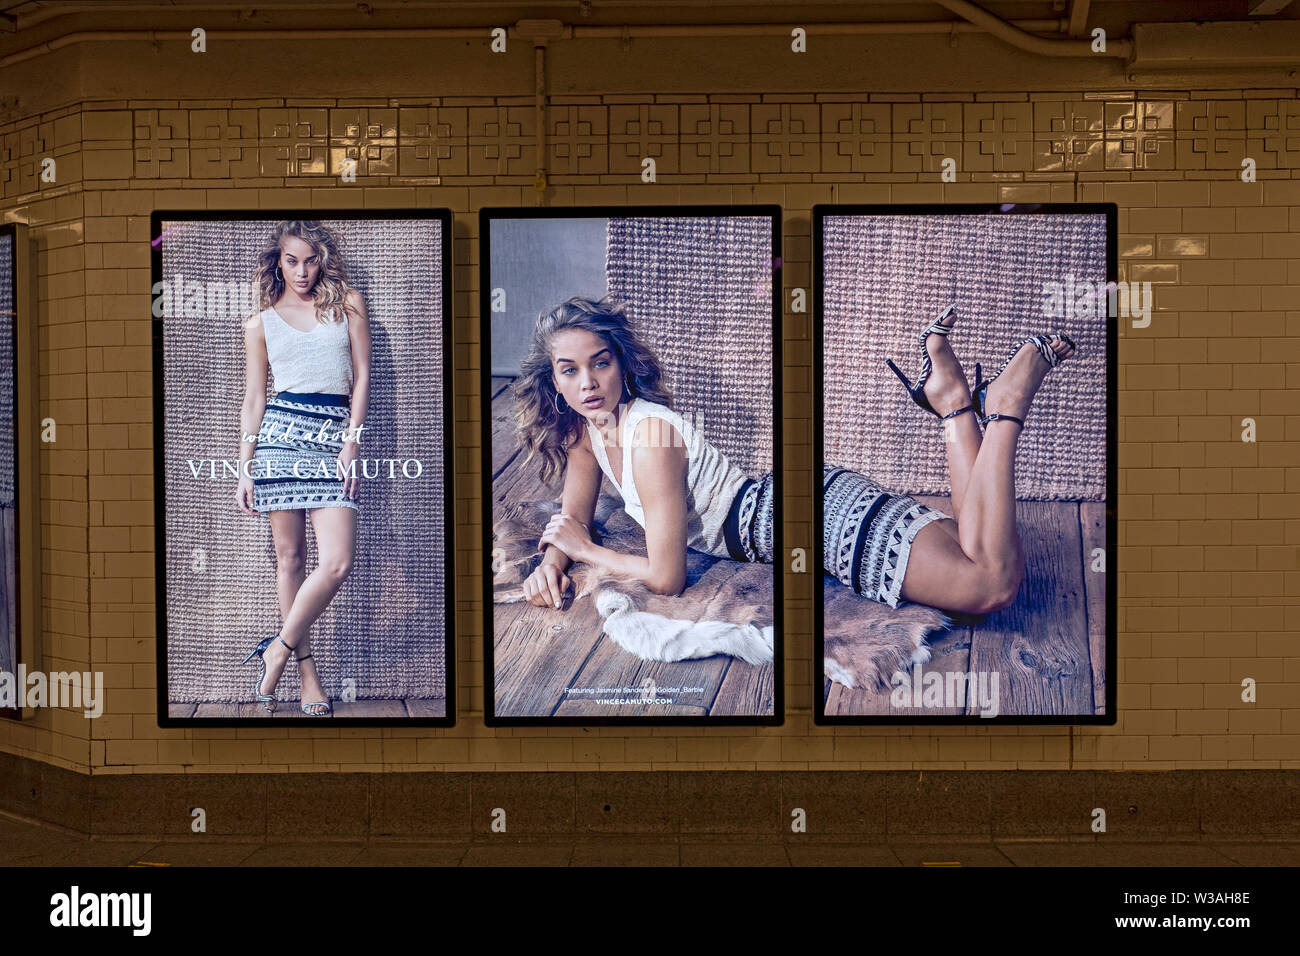 Triptychon. Eine koordinierte 3 Panel Screen mit bewegten Bildern Werbung für Vince Camuto, die Neun West Fashion Designer. In einer U-Bahn-Station in NYC. Stockfoto